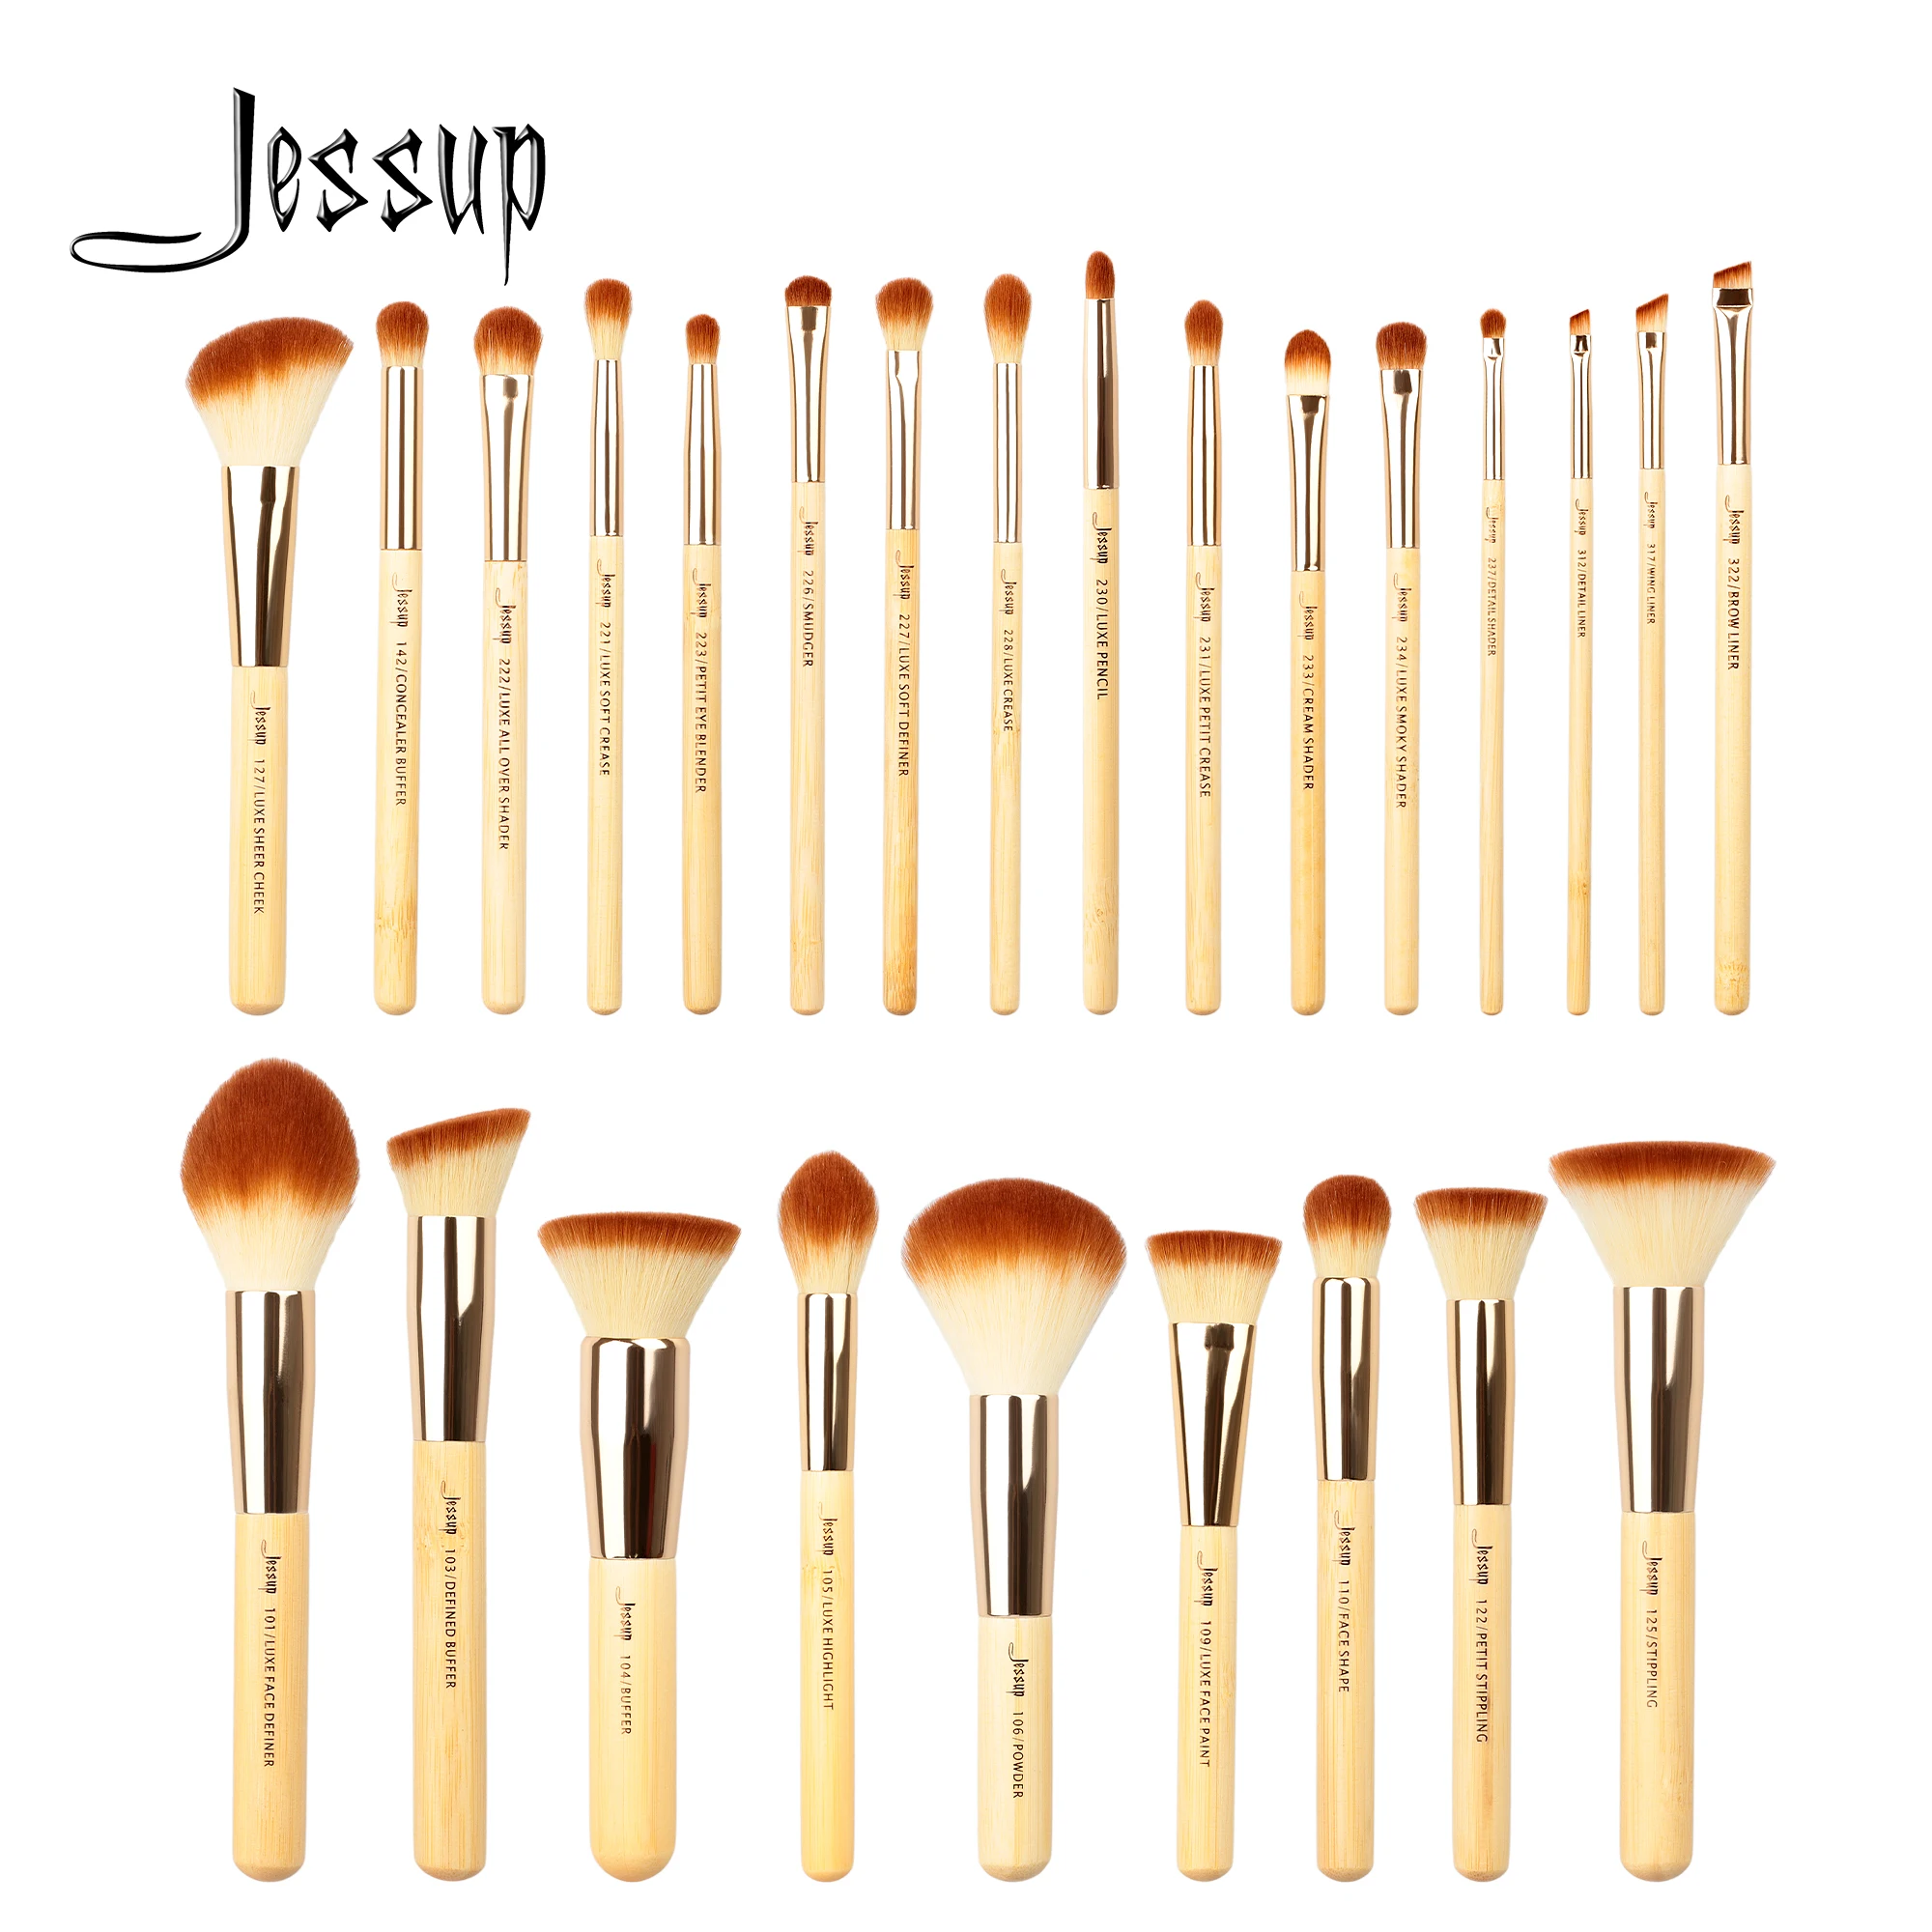 Jessup-Juego de brochas de maquillaje de bambú, 6- 25 piezas, brocha sintética para base en polvo, delineador de ojos, sombra de ojos, maquillaje